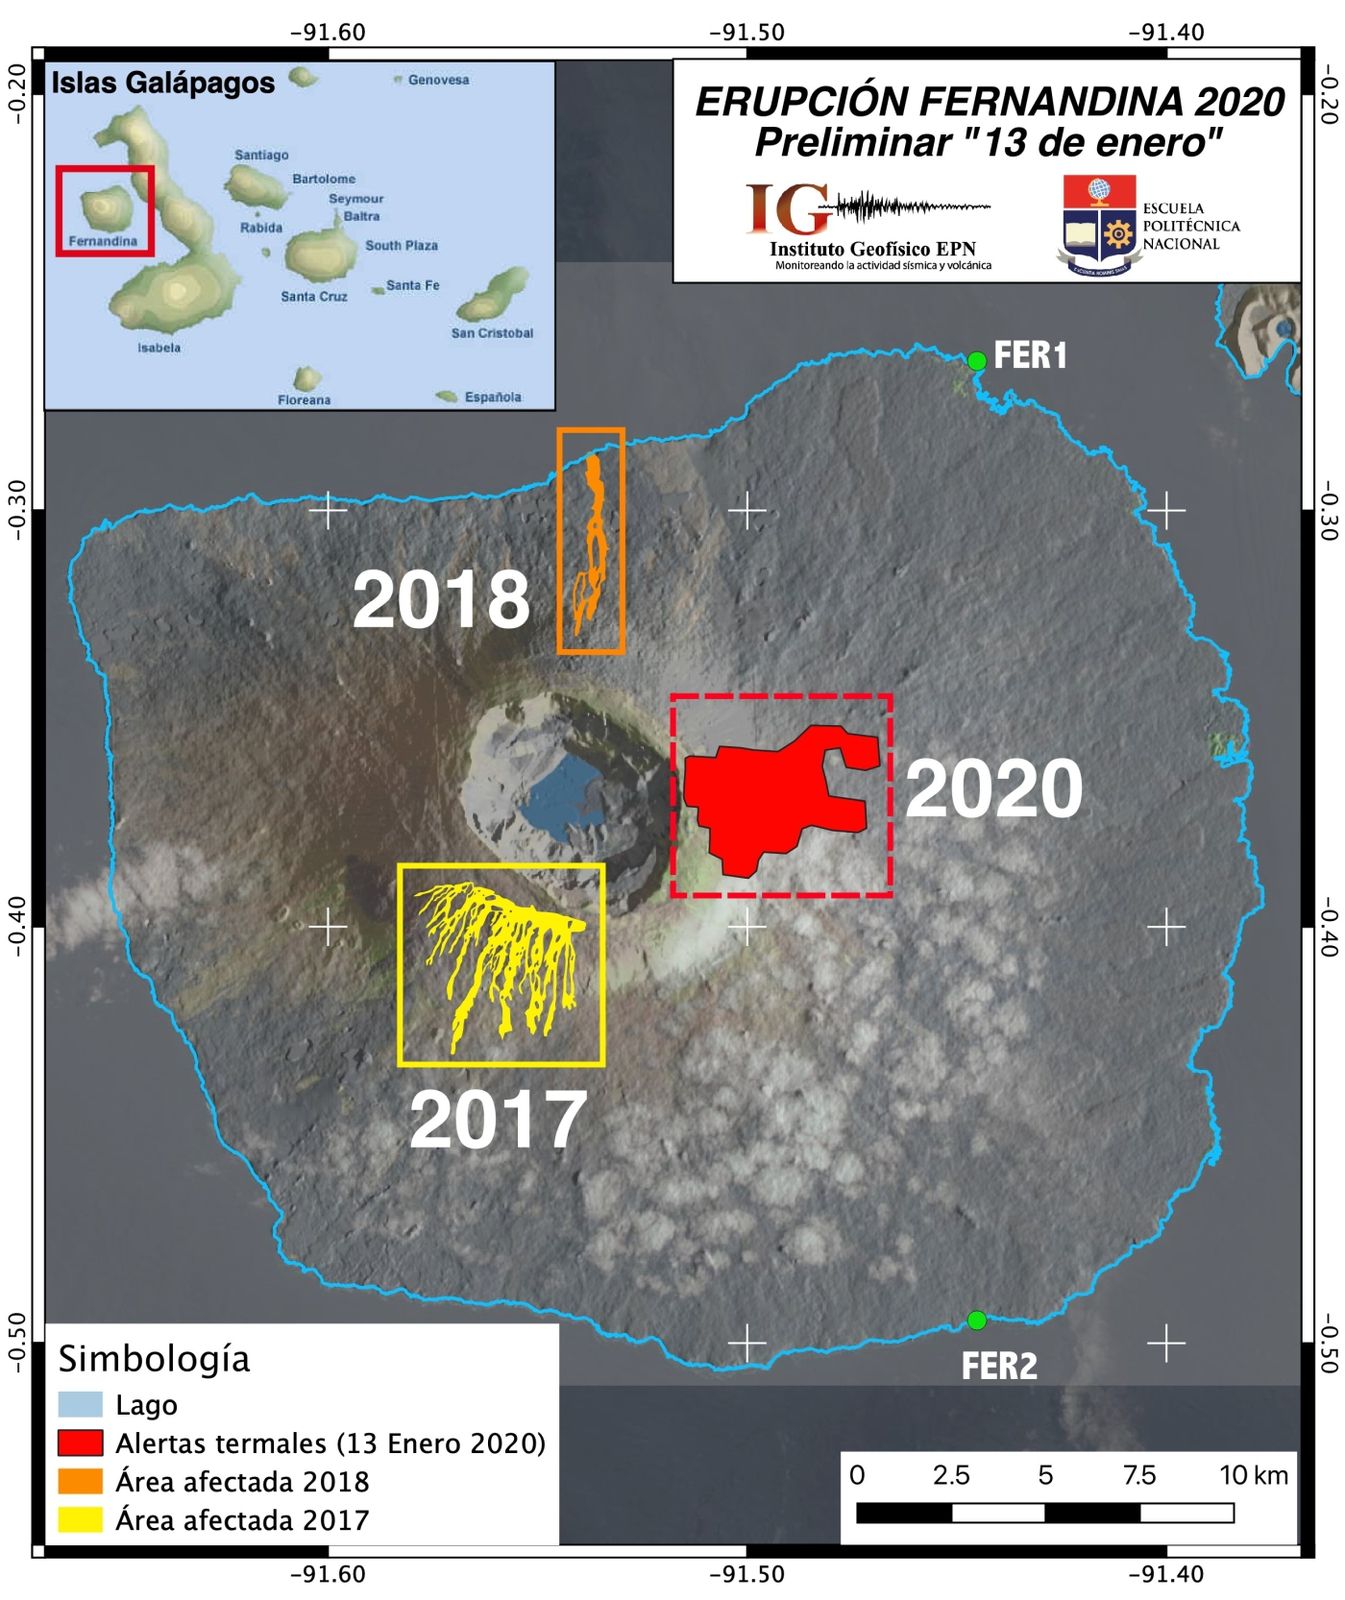 Fernandina - Zones avec présence d'alertes thermiques détéctées par FIRMS, lors des éruptions de 2017, 2018 et 2020 - Doc. Nasa / IGEPN - F.  Vásconez